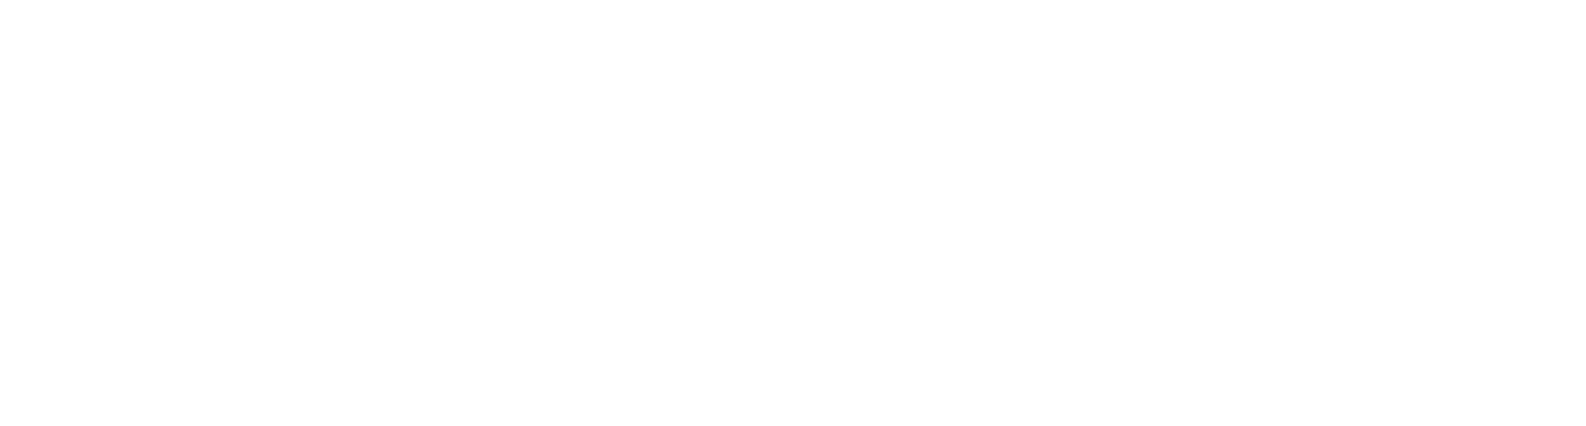 Cleanaway Waste Management Logo groß für dunkle Hintergründe (transparentes PNG)